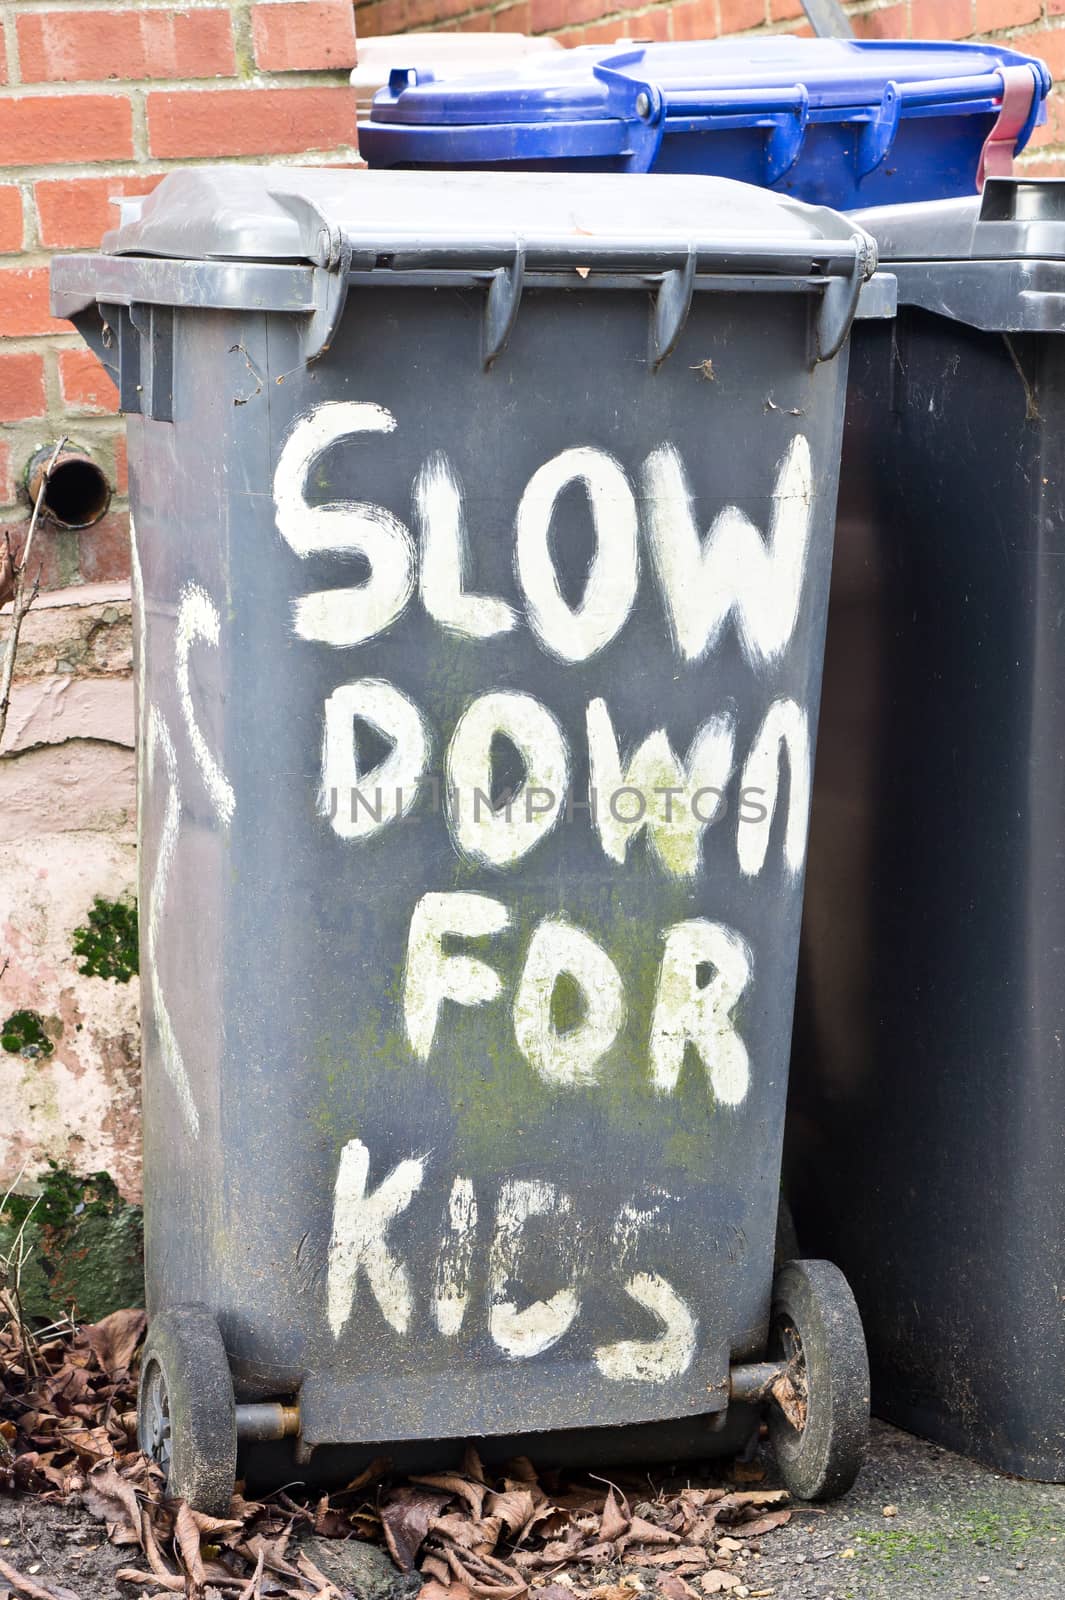 Slow down for kids written on a black bin